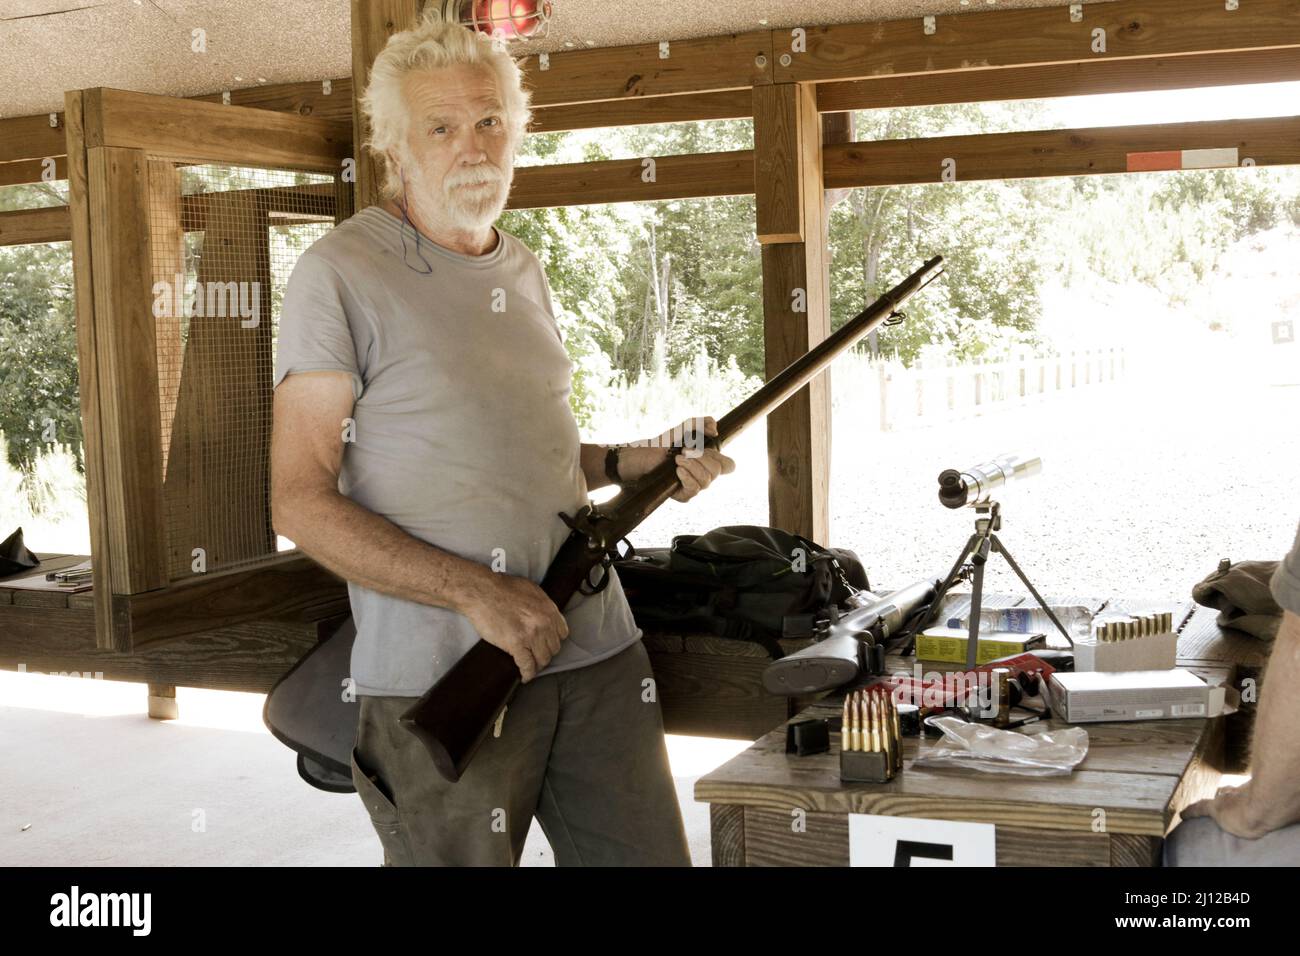 Old man at gun range with old gun Stock Photo